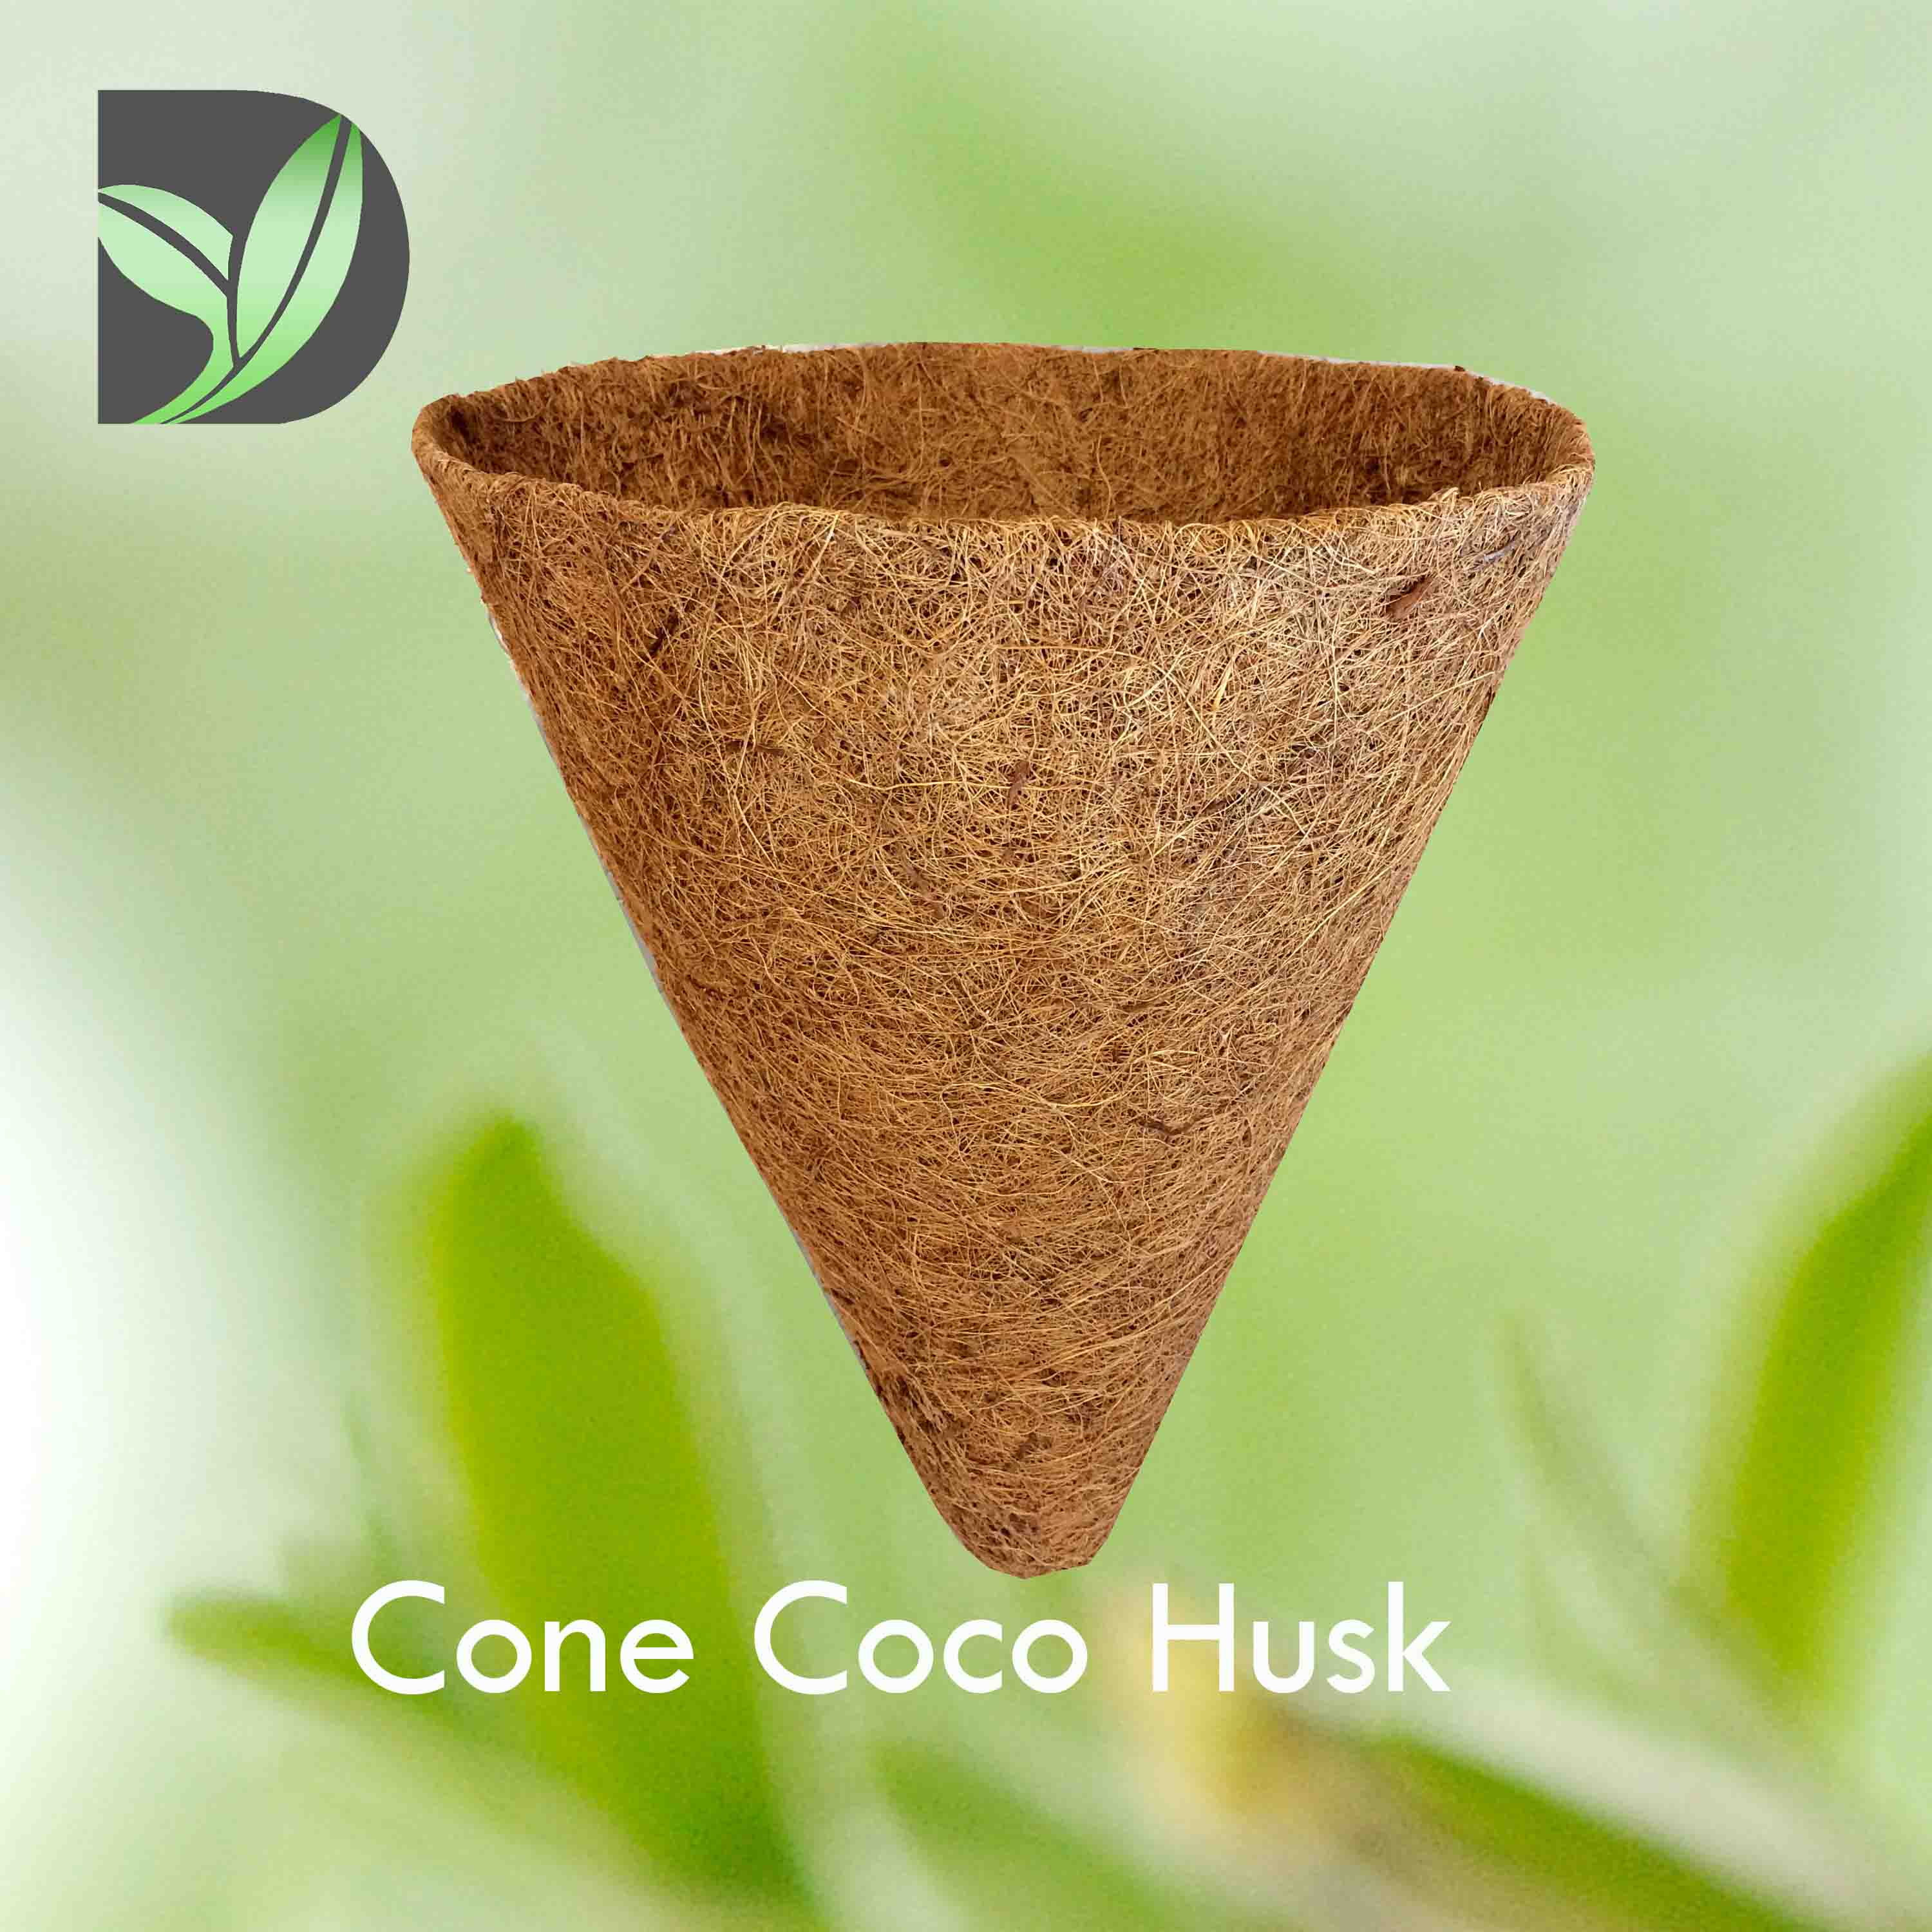 Cone Coco Husk